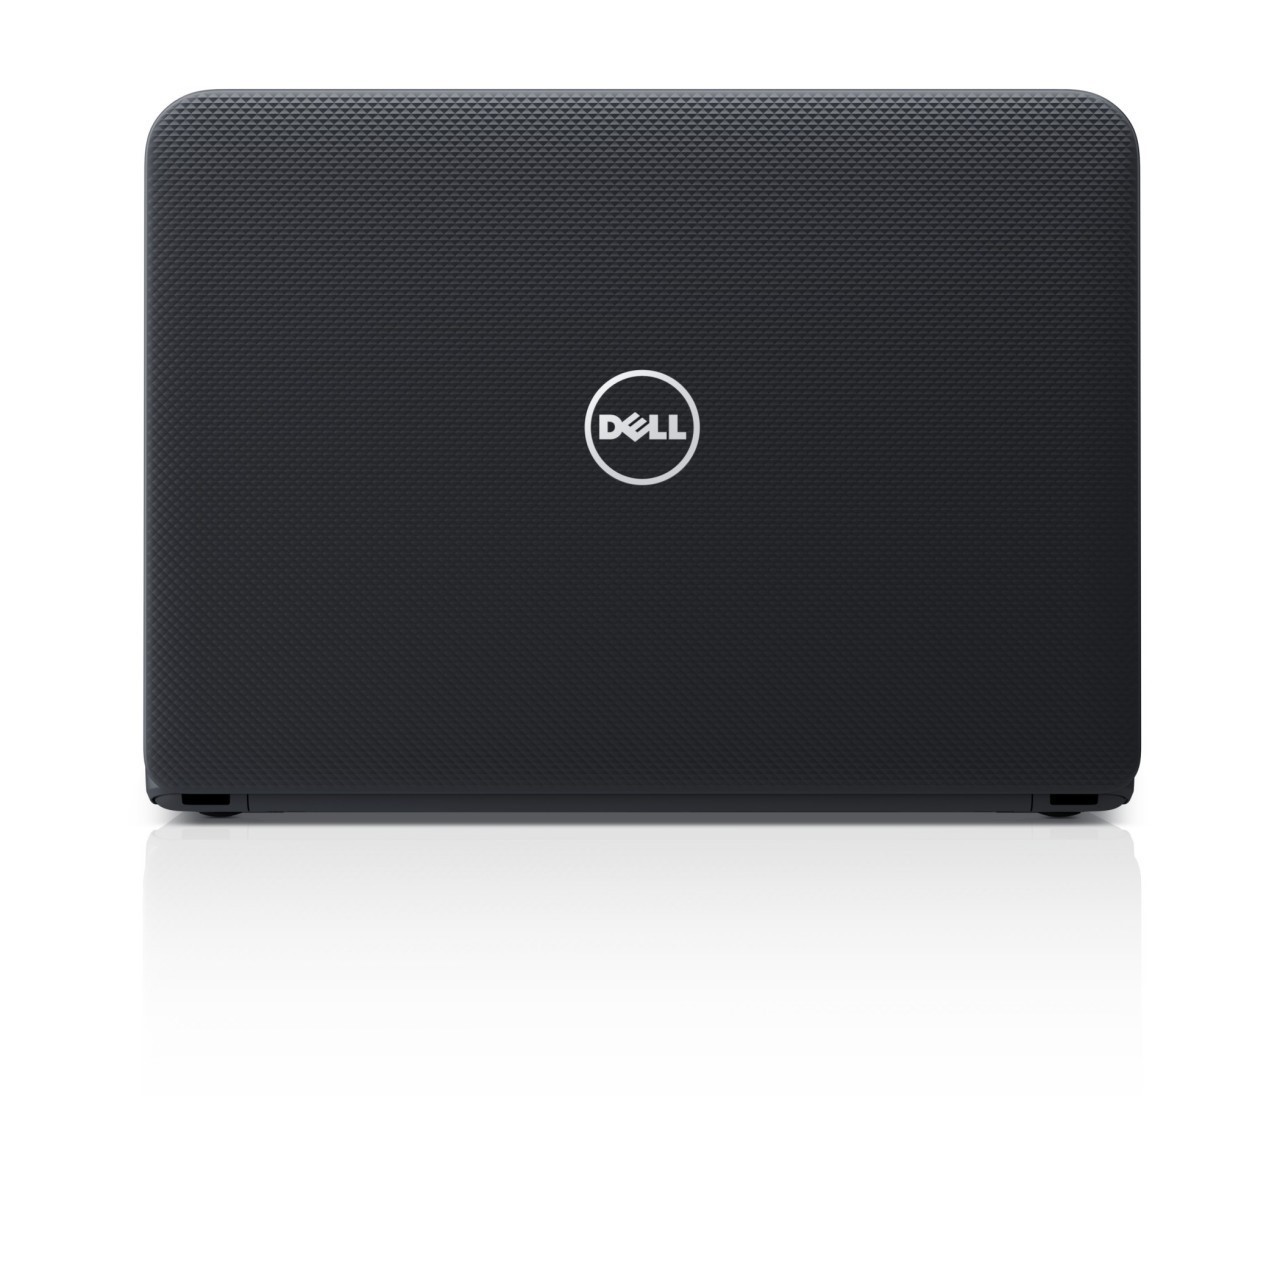 Laptop Dell Inspiron 3421 Intel i3 de 3a. geração